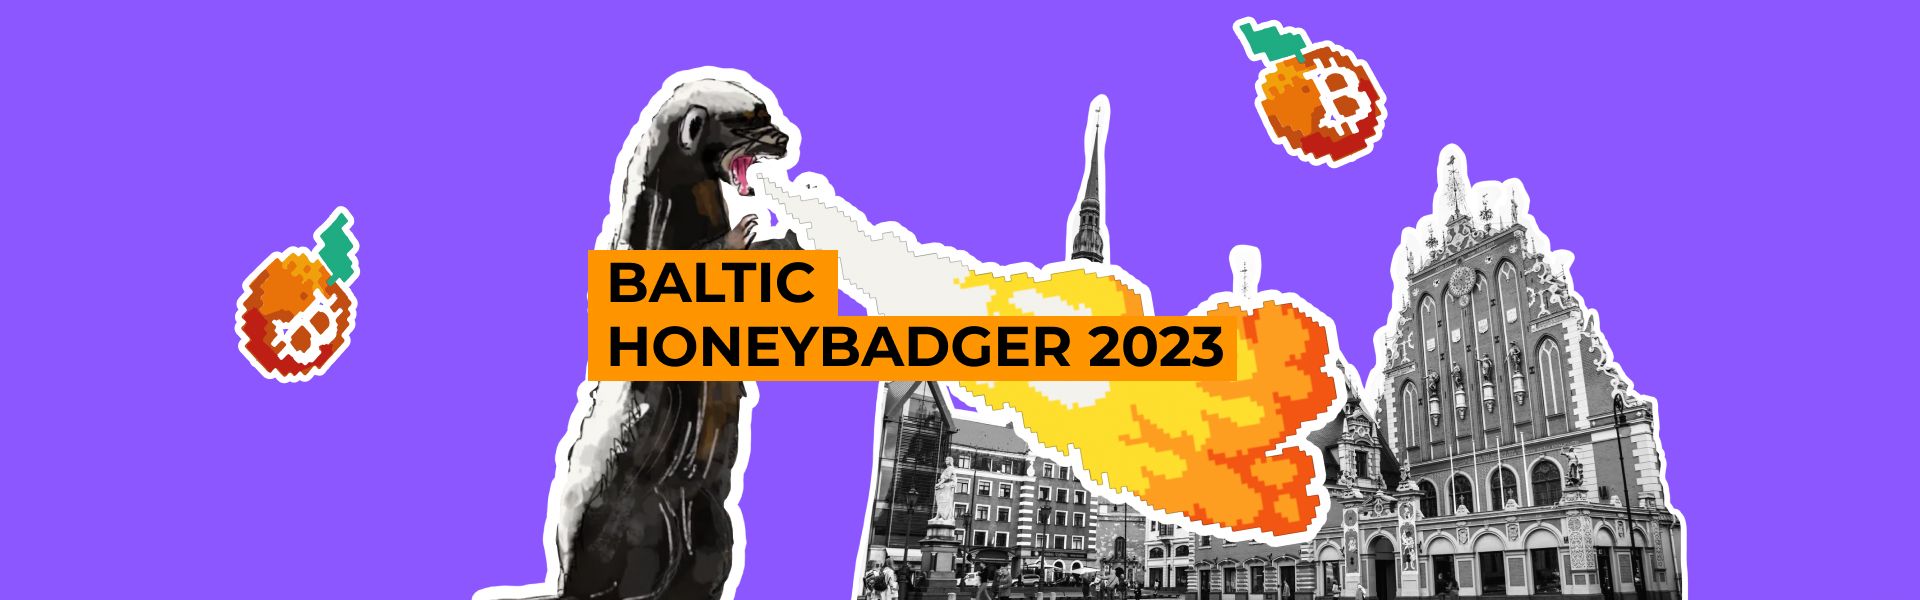 Якою буде конференція Baltic Honeybadger 2023